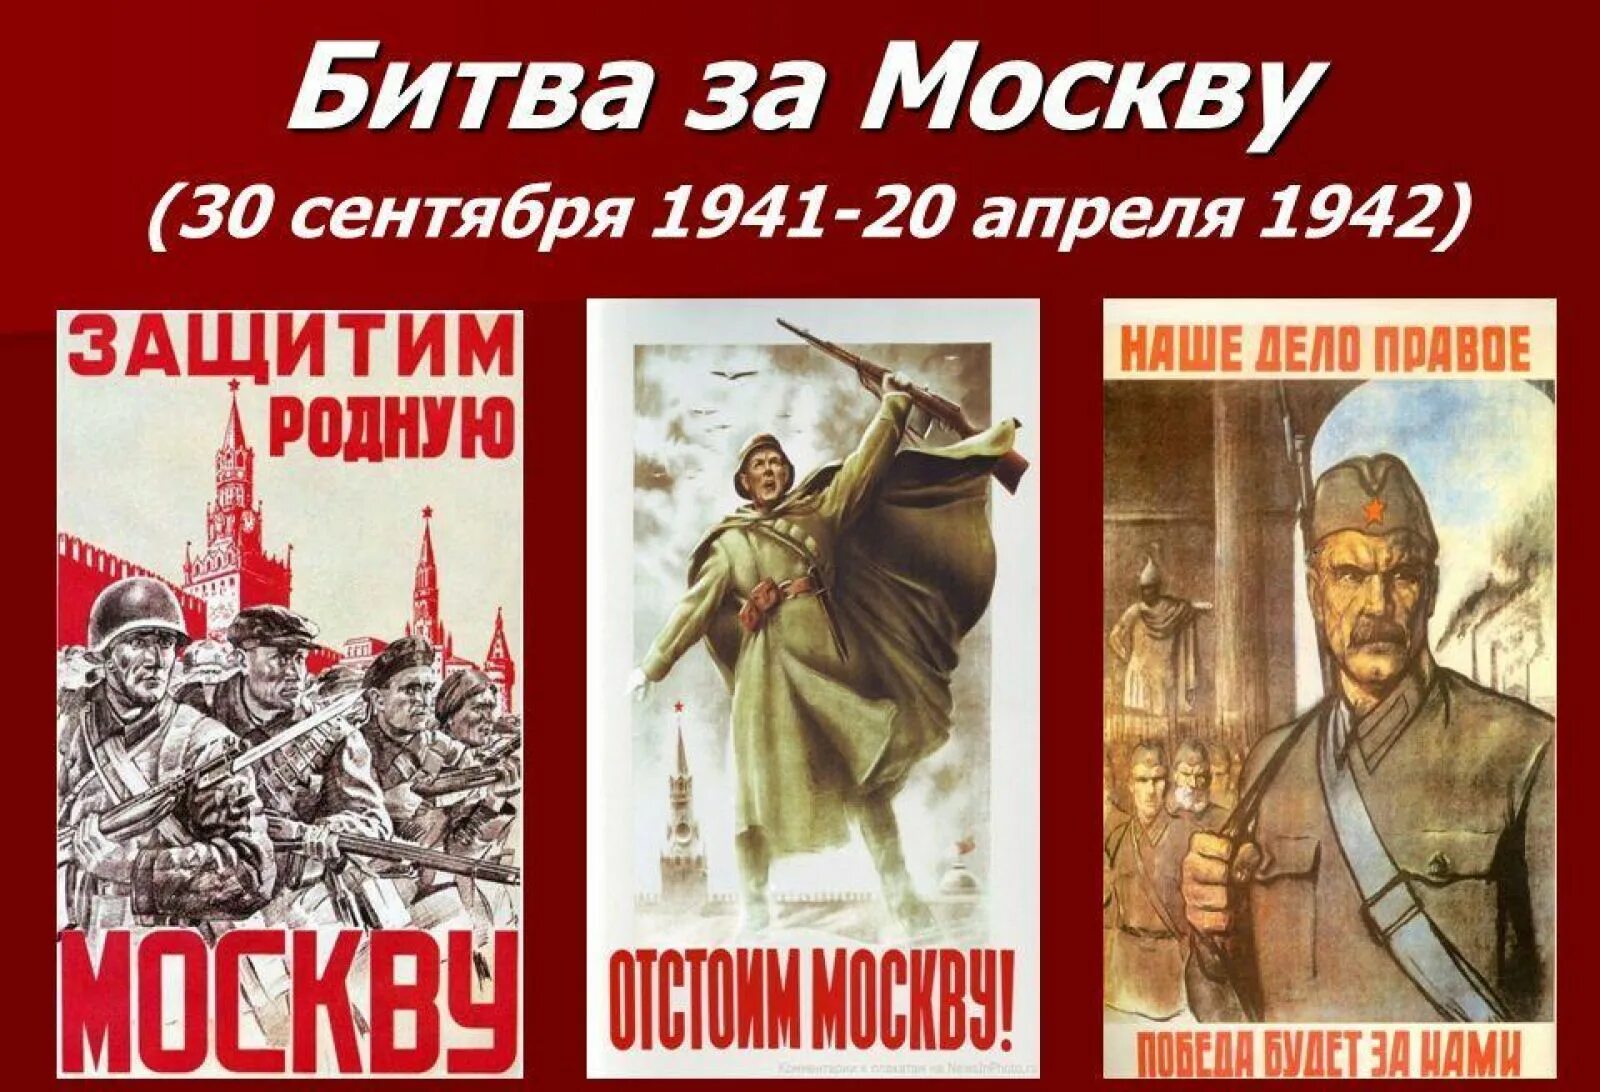 20 Апреля 1942 завершилась битва за Москву. 30 Сентября 1941 года началась битва за Москву. 20 Апреля 1942 окончание битвы за Москву. 30 Сентября начало битвы за Москву. 30 апреля 9 мая